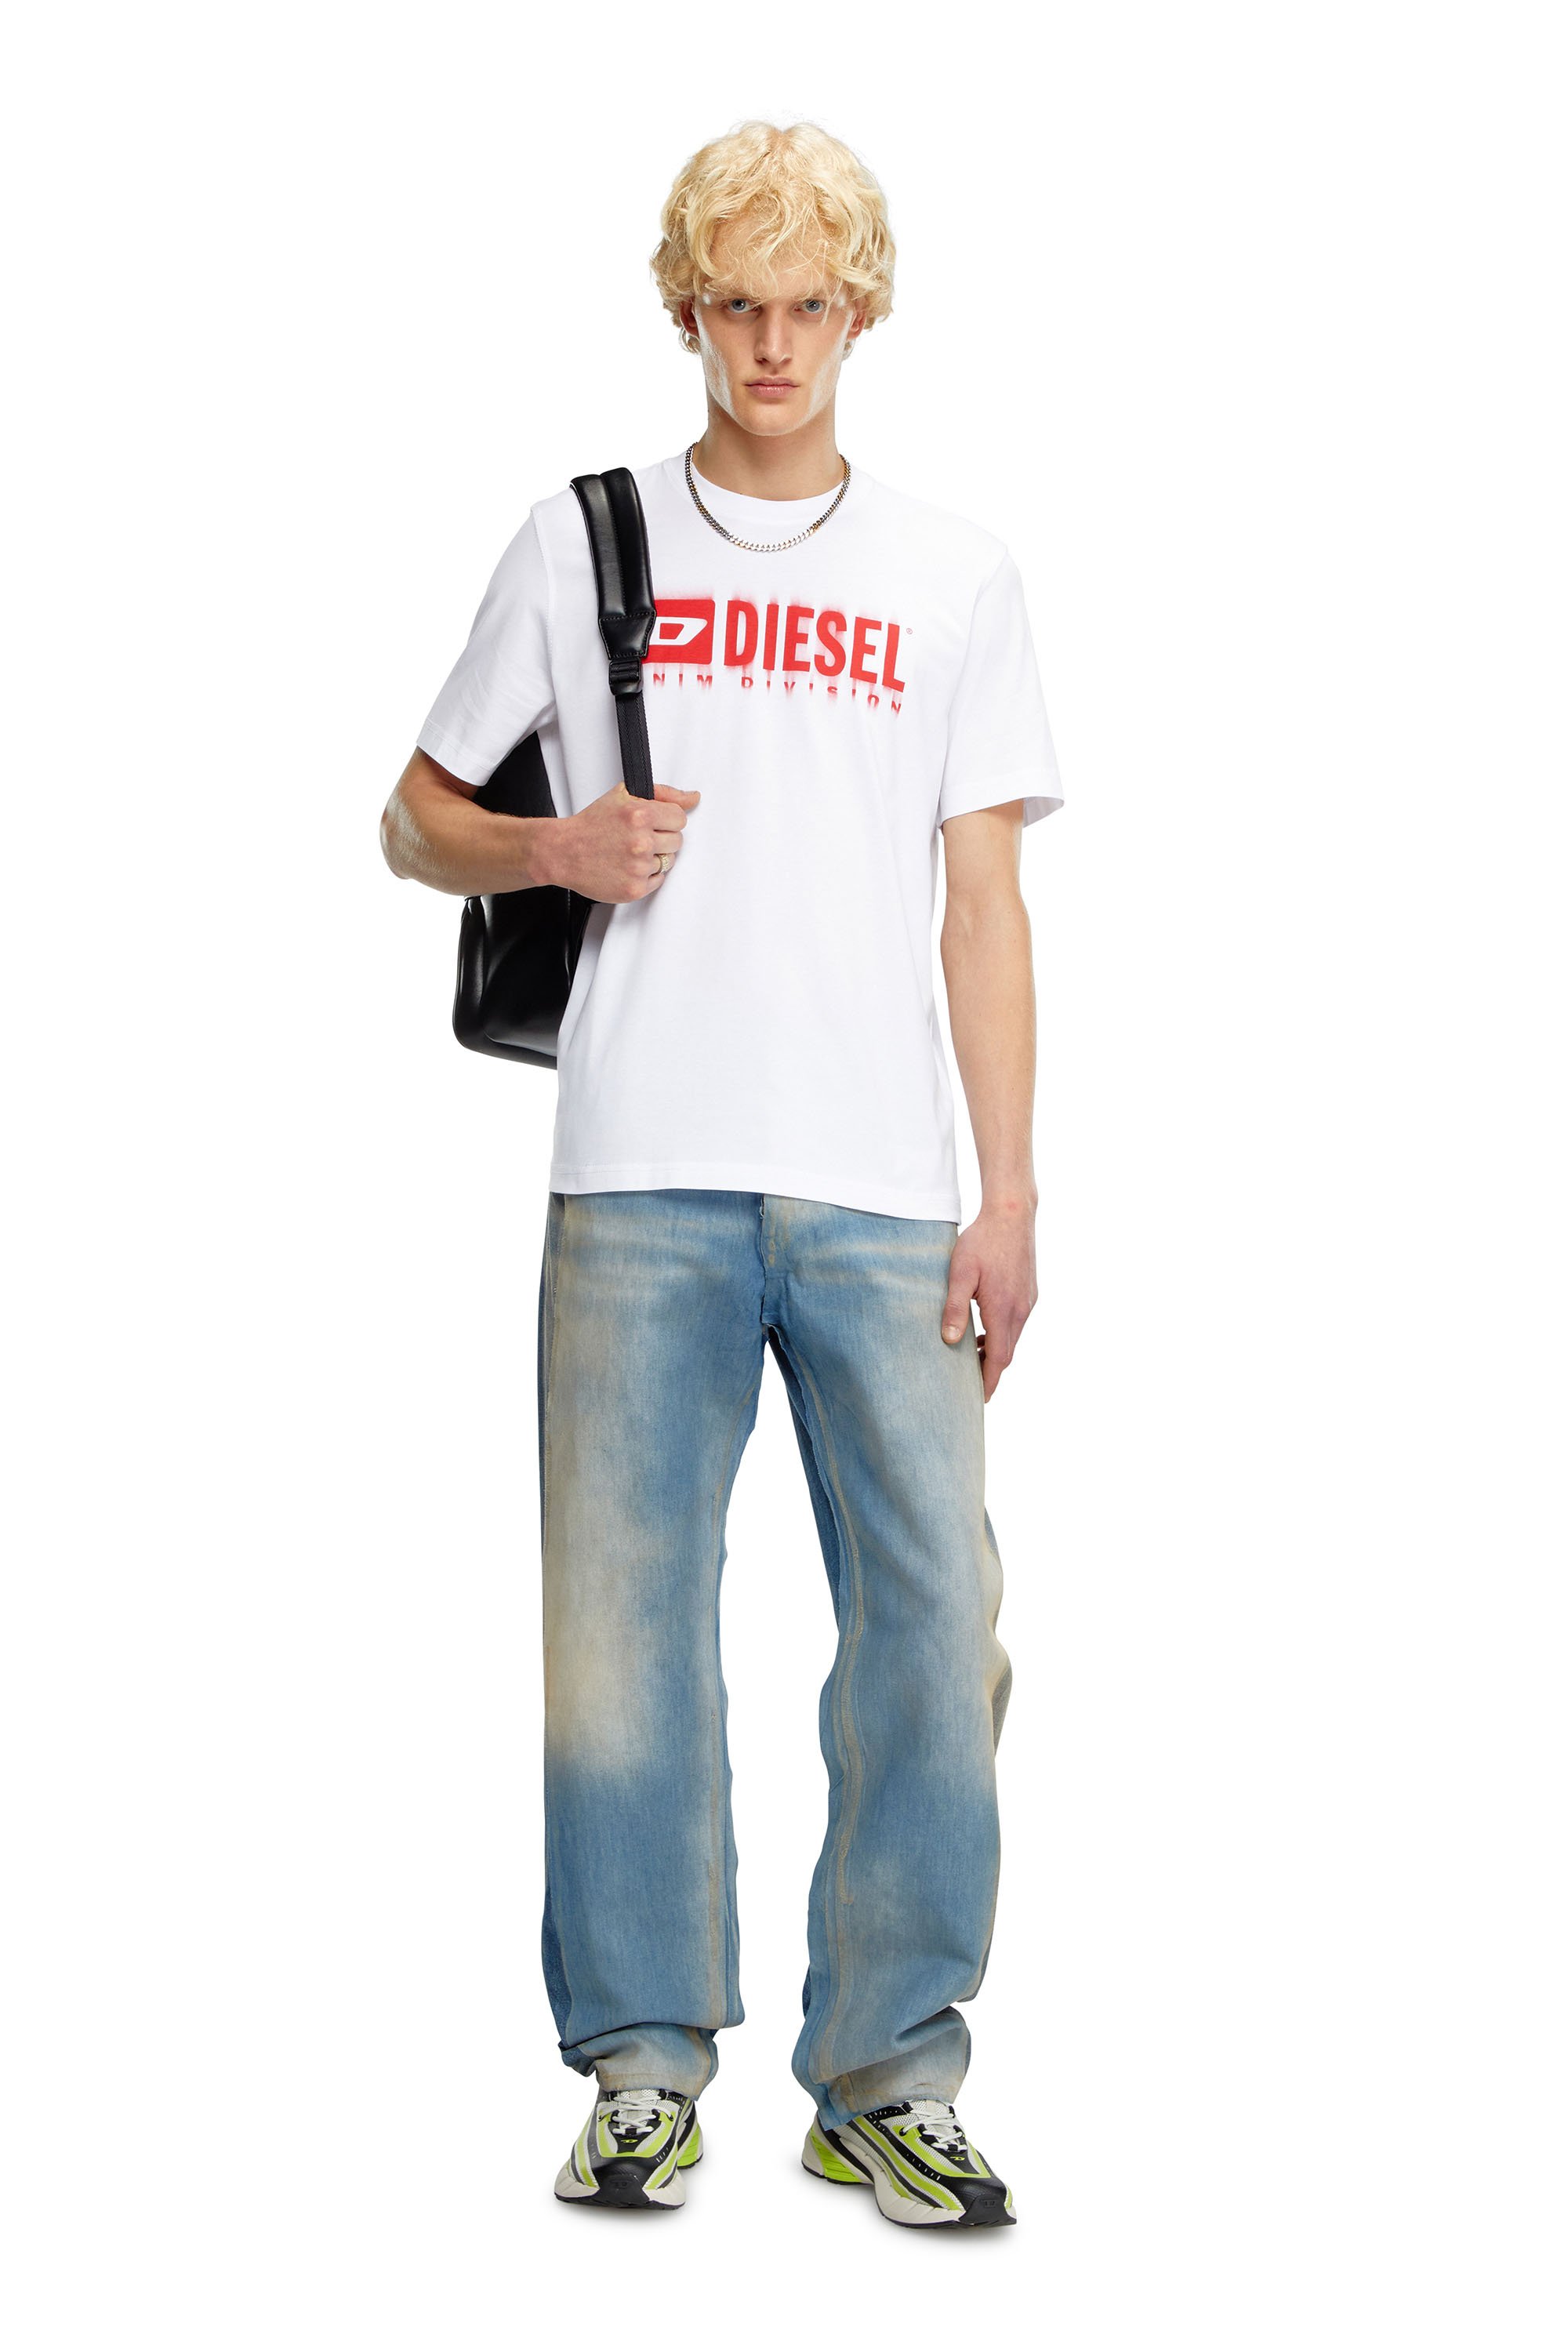 Diesel - T-ADJUST-Q7, Man T-shirt with blurry Diesel logo in White - Image 3